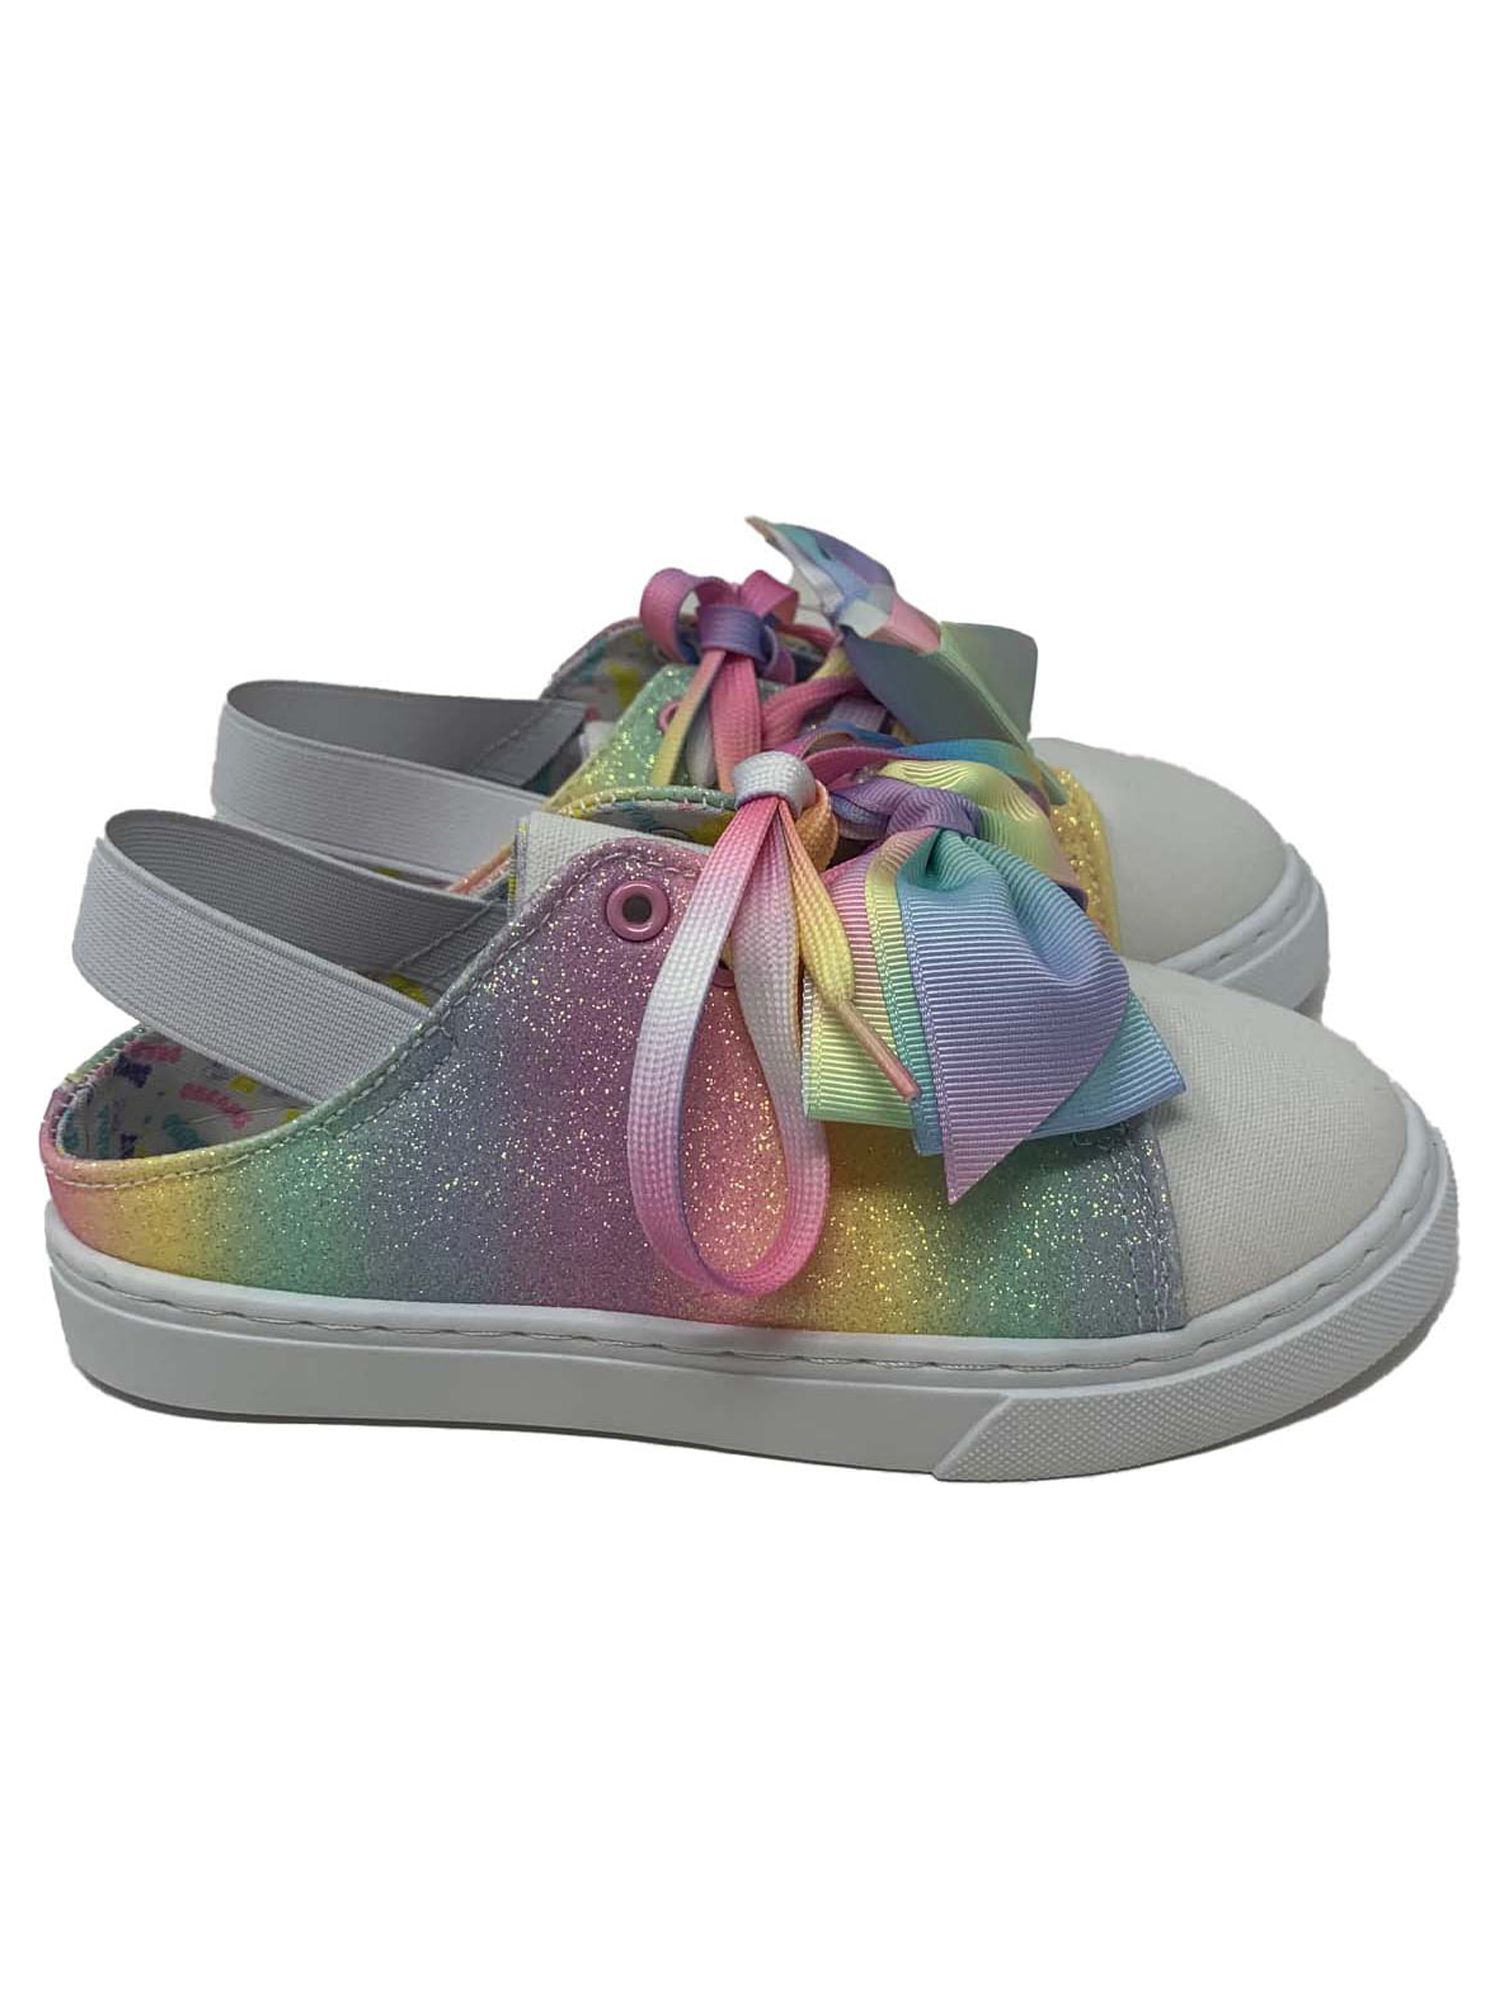 Toddler Jojo Siwa Glitter Sling Back Low Top Sneaker (Toddler Girls) - image 2 of 6